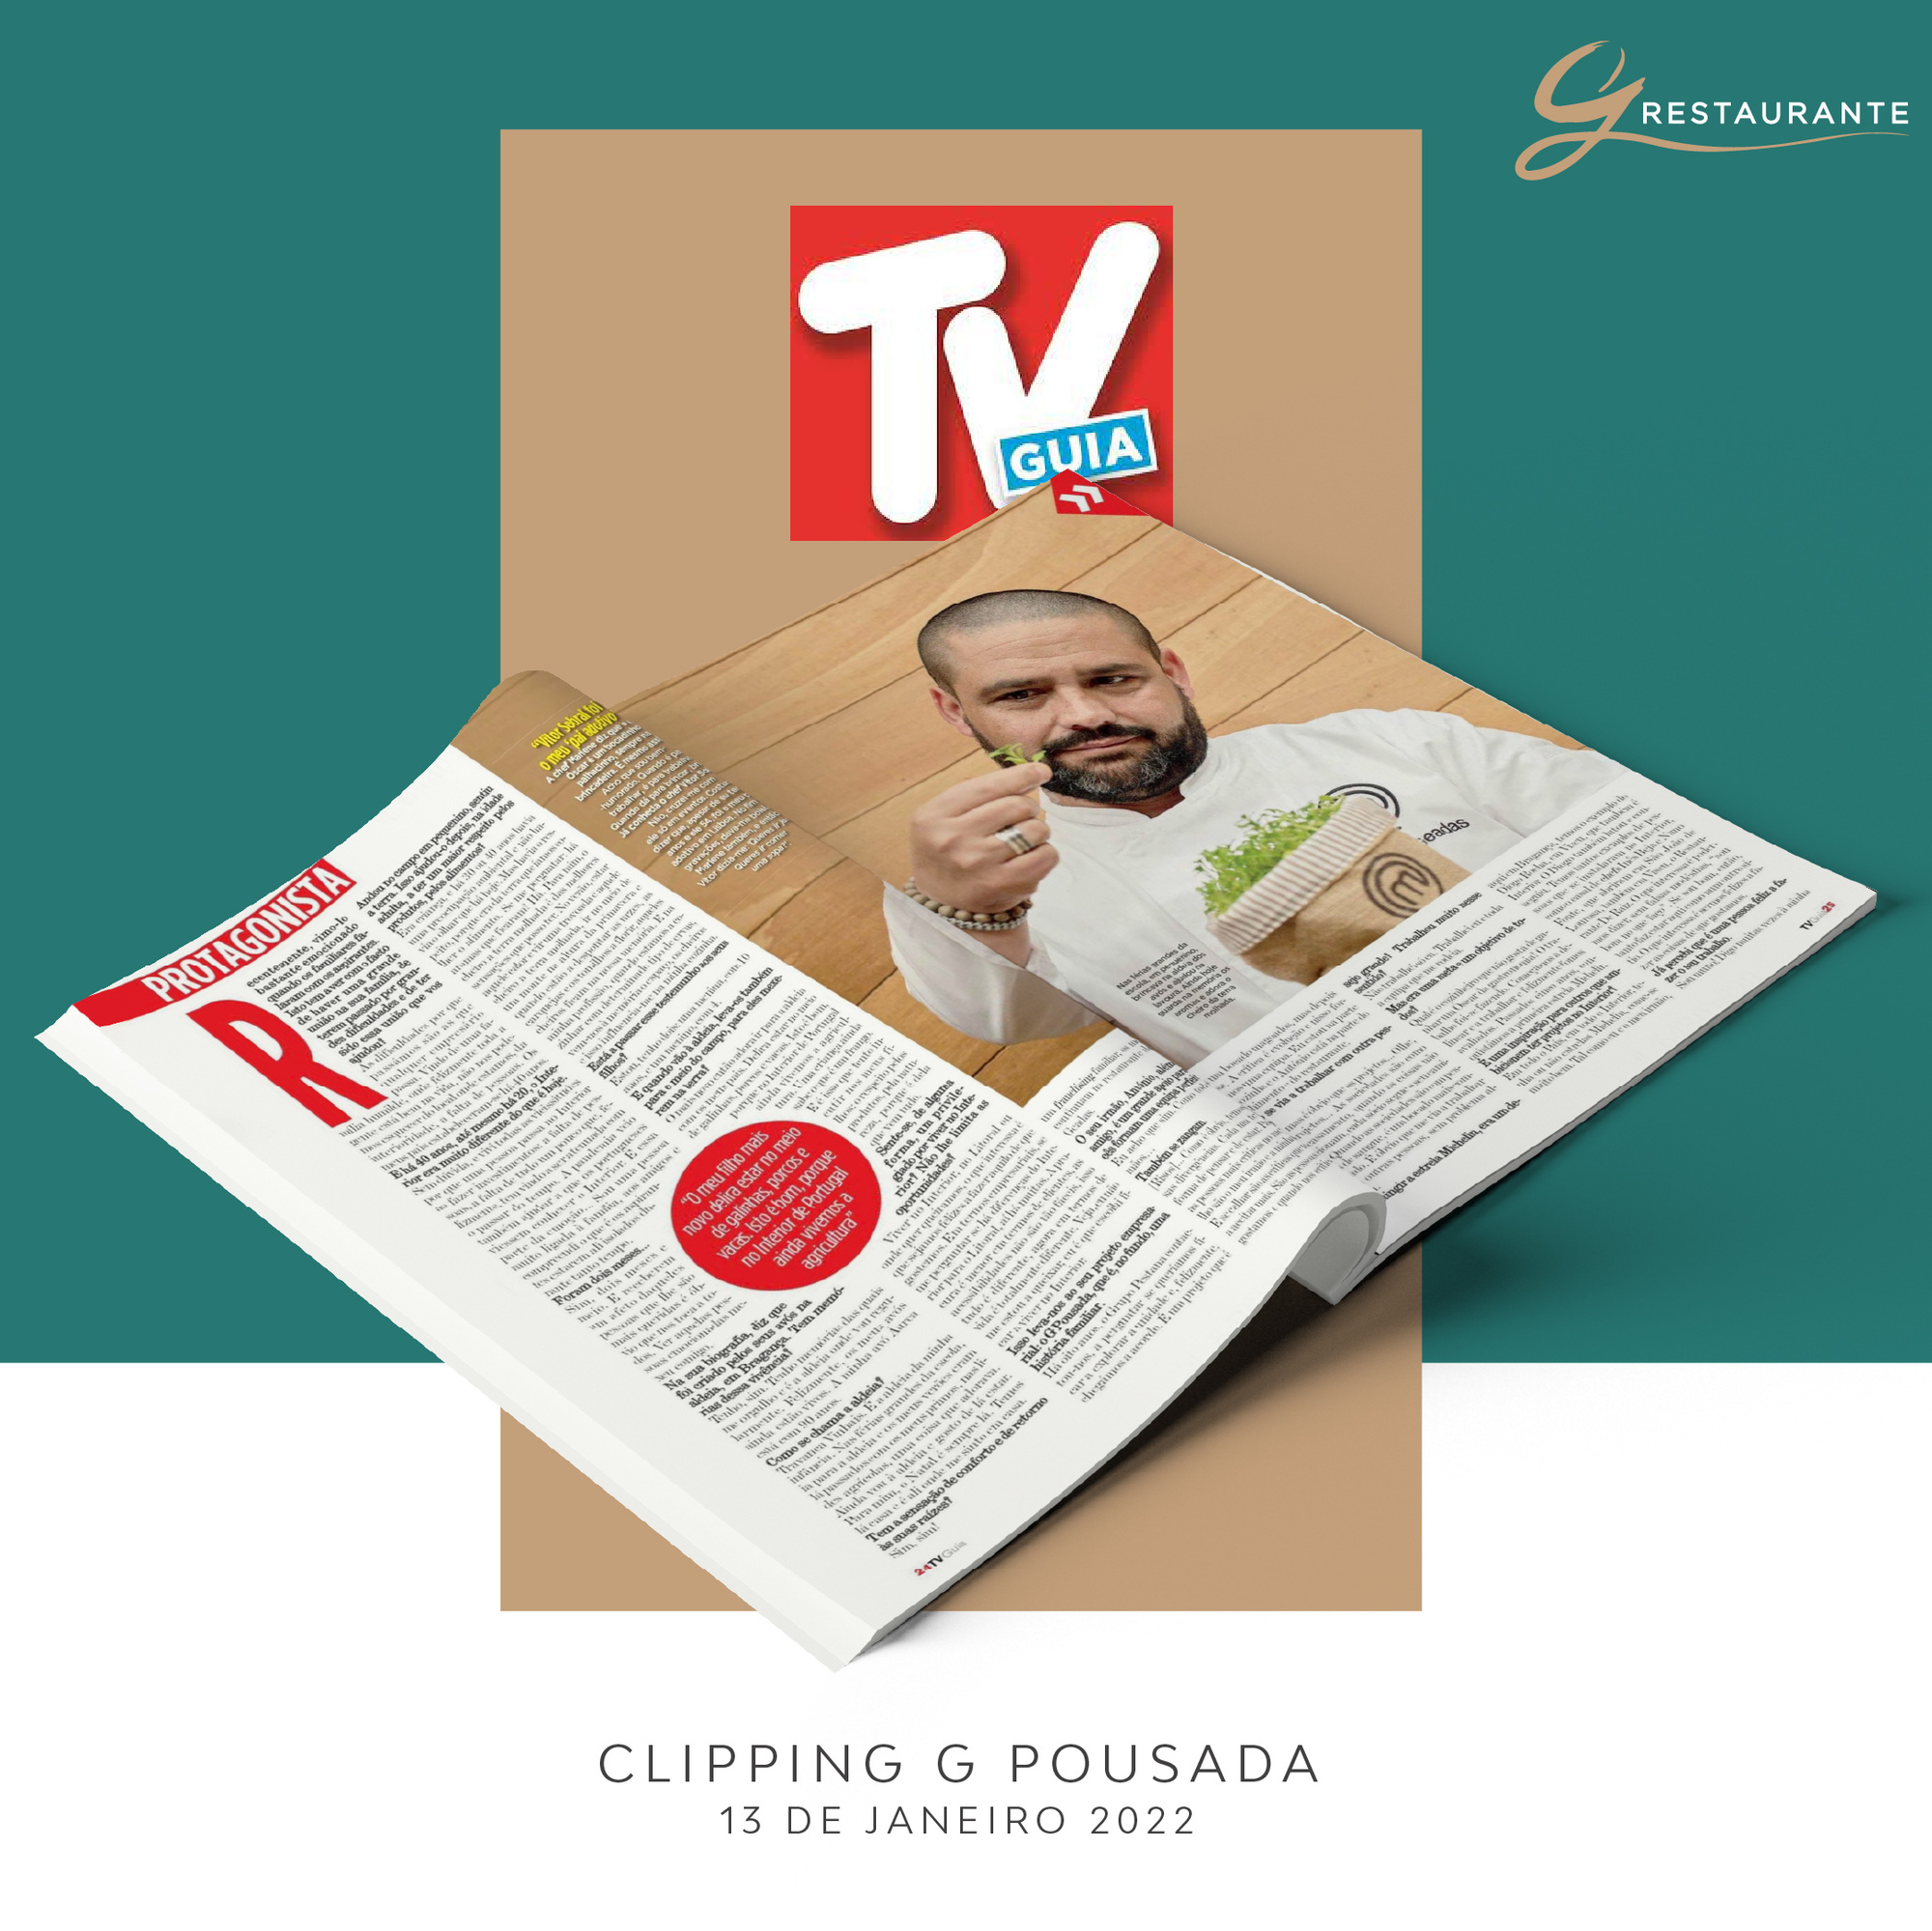 CLIPPING G POUSADA / Chef Óscar Geadas